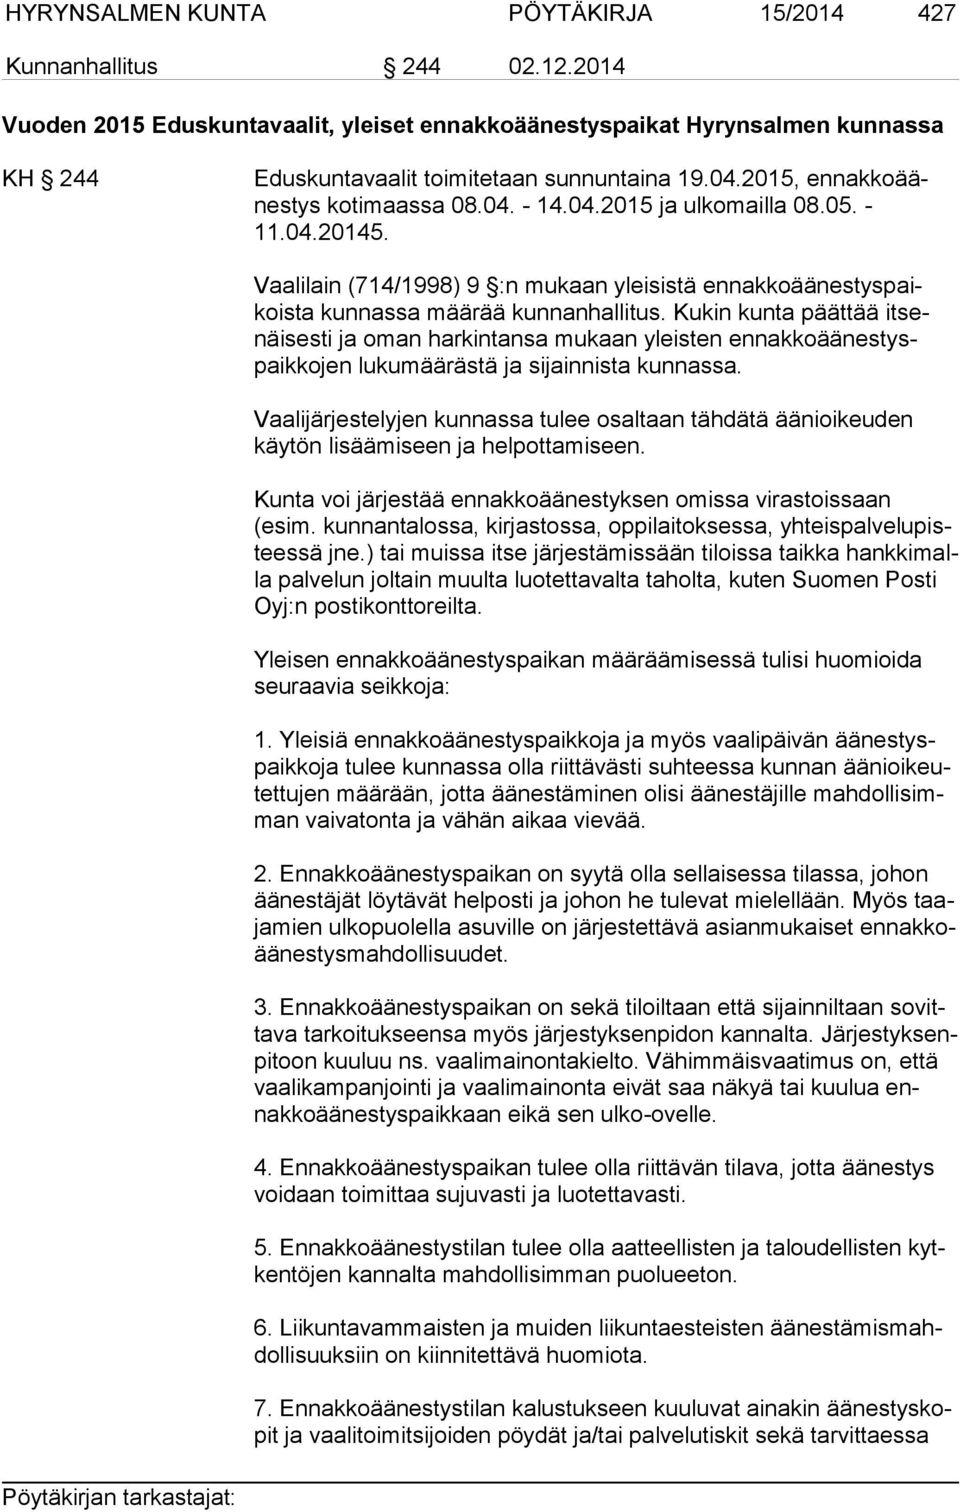 05. - 11.04.20145. Vaalilain (714/1998) 9 :n mukaan yleisistä ennakkoää nes tys paikoista kunnassa määrää kunnanhallitus.